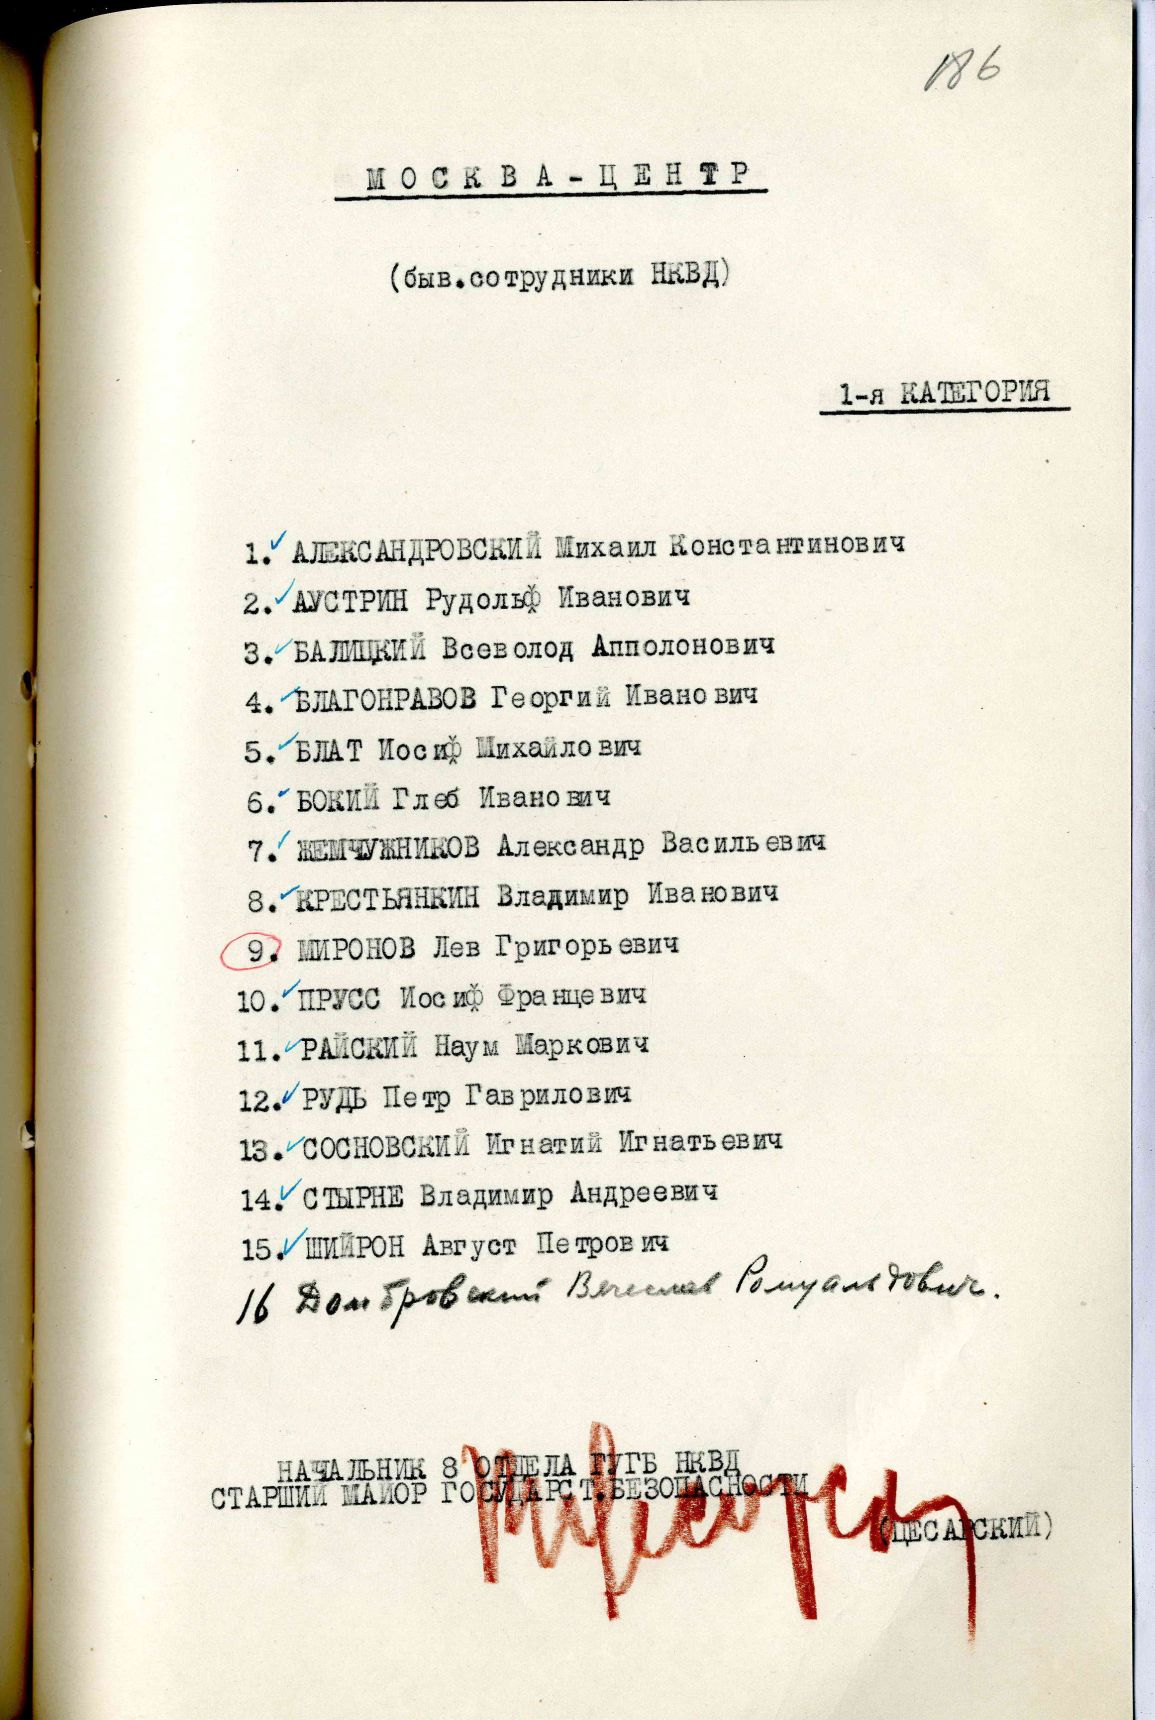 Сталинский расстрельный список в ОП от 13.11.1937 г.